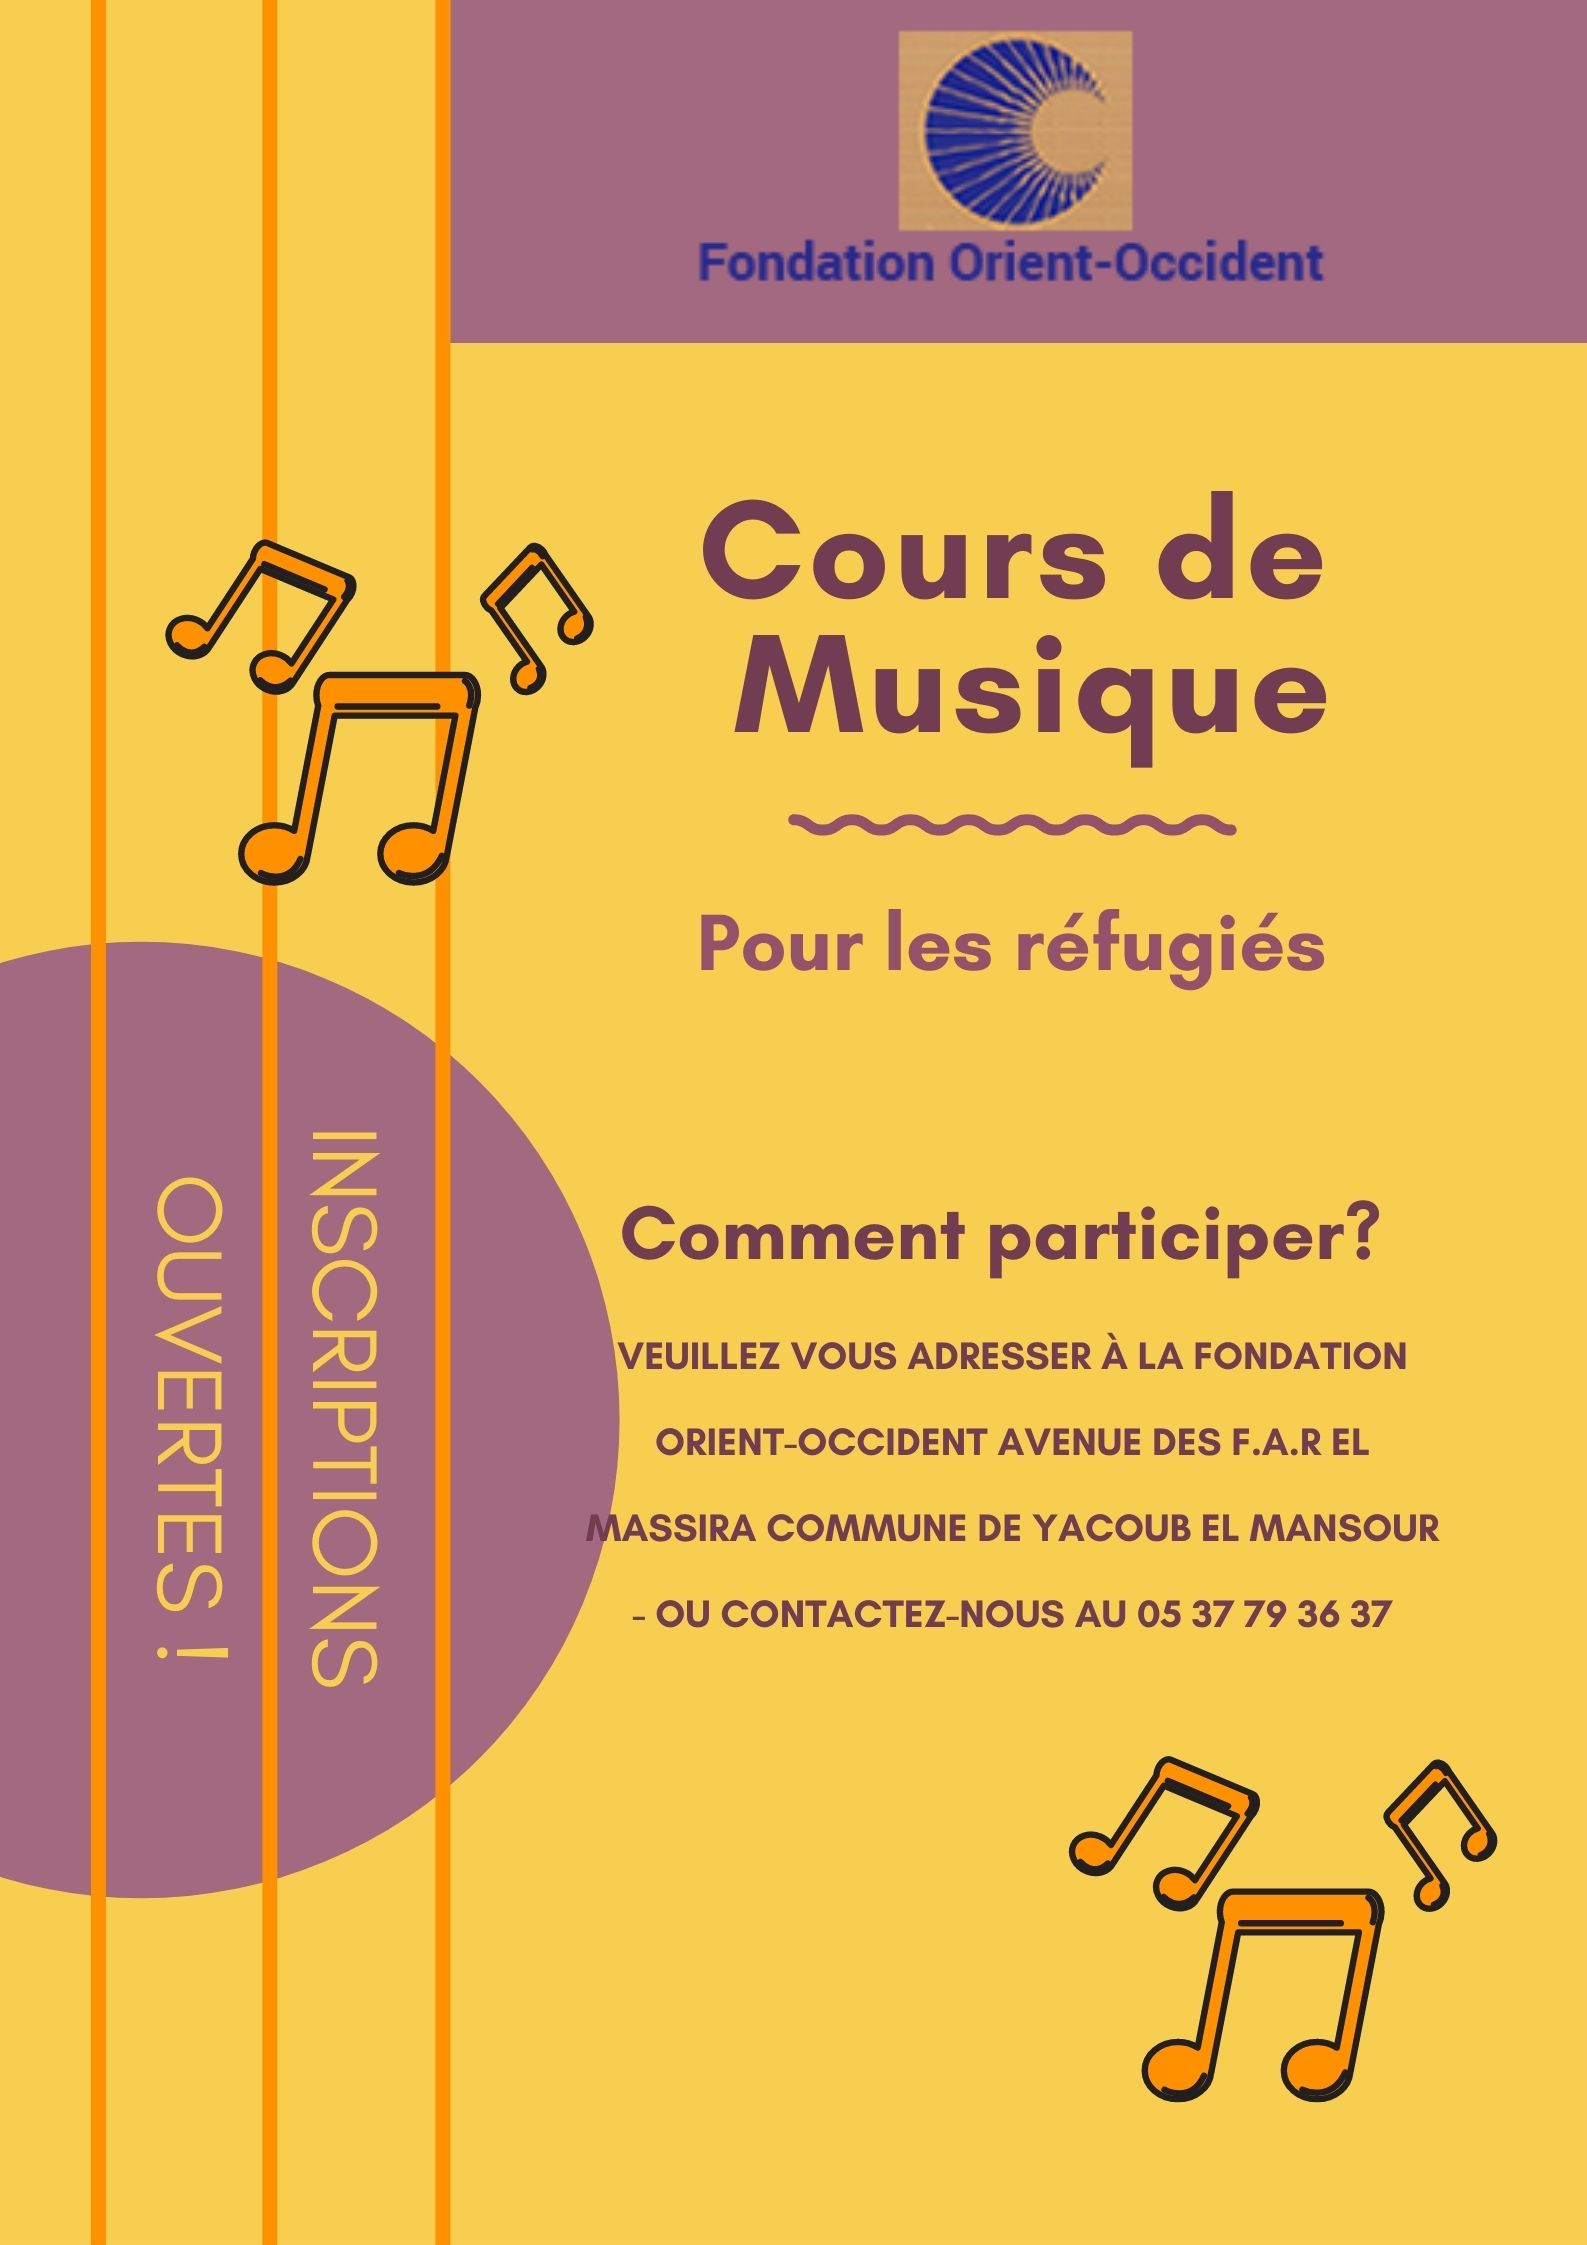 Cours de musique à la Fondation Orient-Occident de Rabat